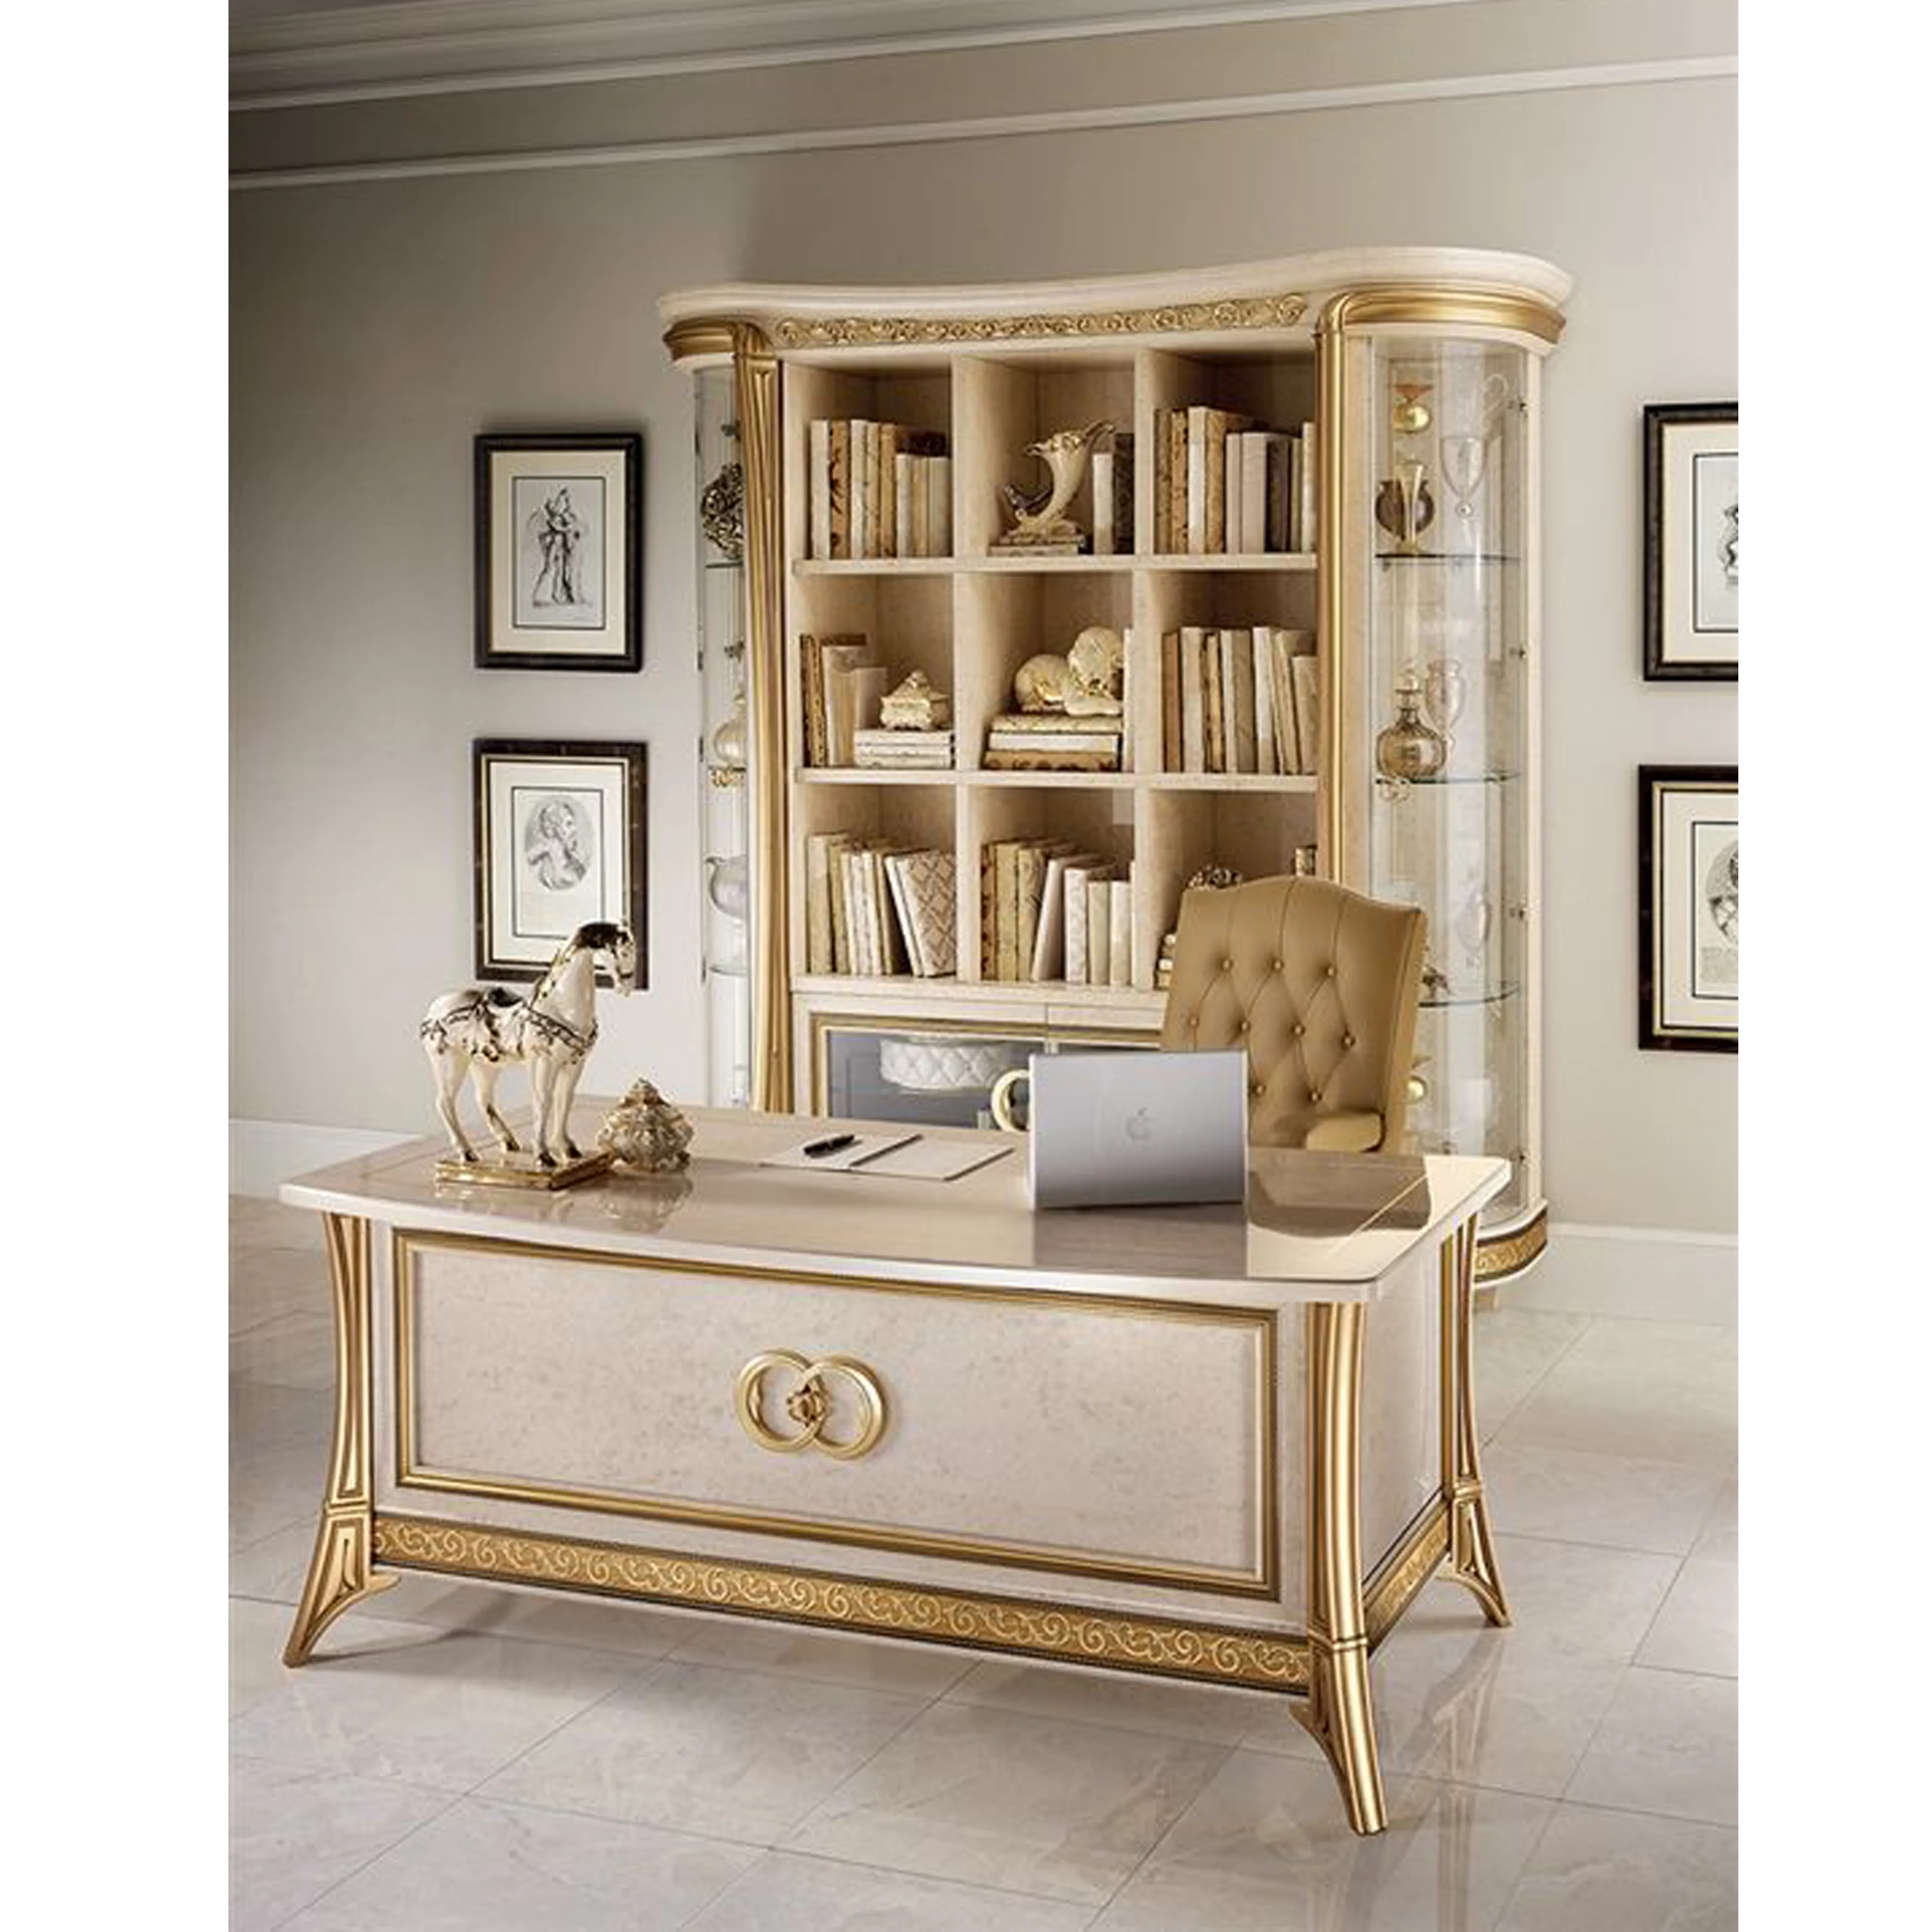 Holz Schreibtisch Modern Boss Office Director Executive Bestseller Elegante klassische hochwertige Gaming Stühle Möbel